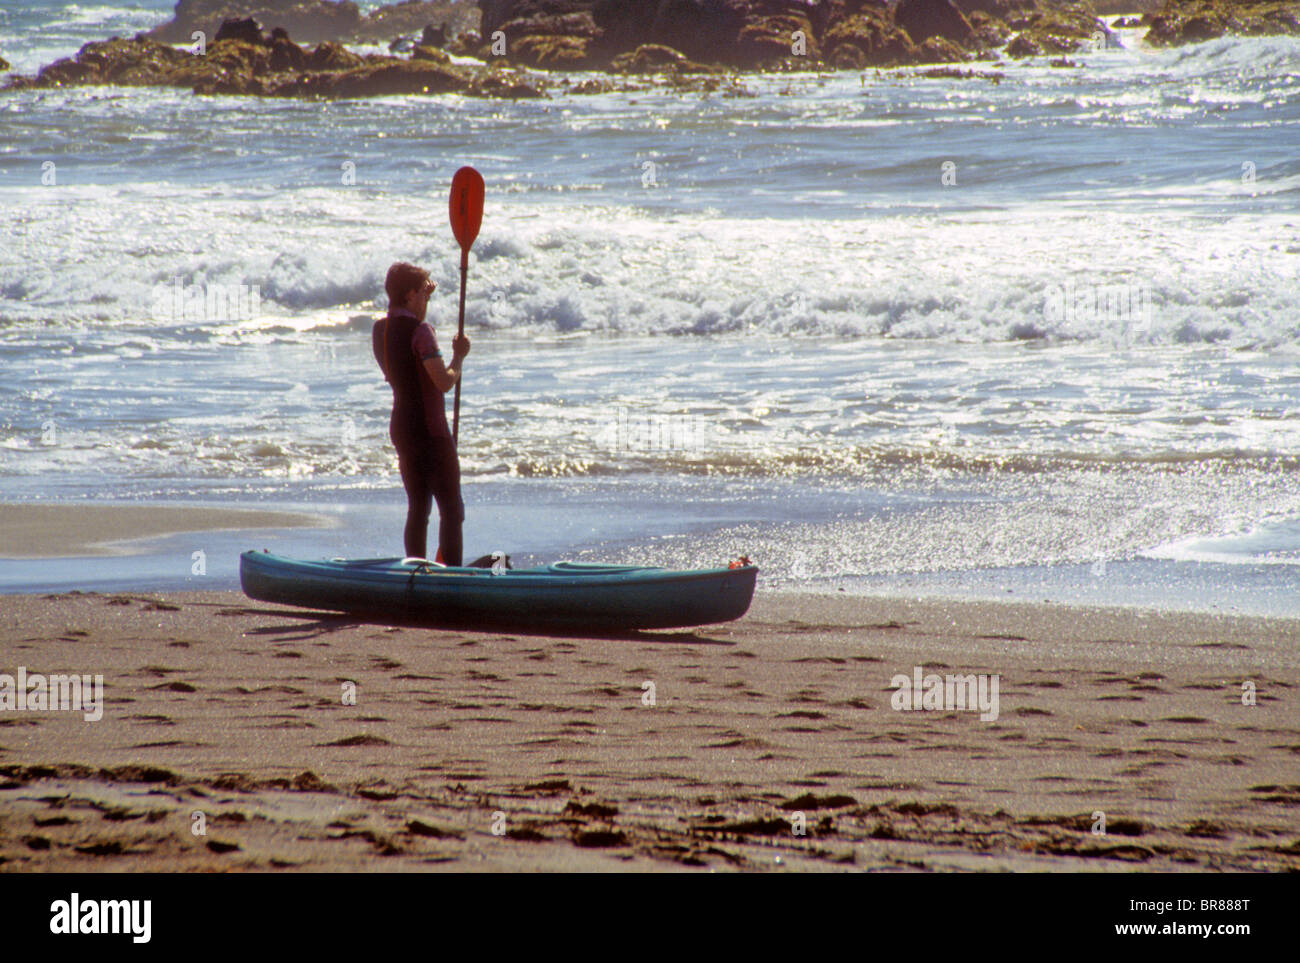 Plage mer Océan surf kayak paddle surf bateau combinaison humide mousse des vagues Banque D'Images